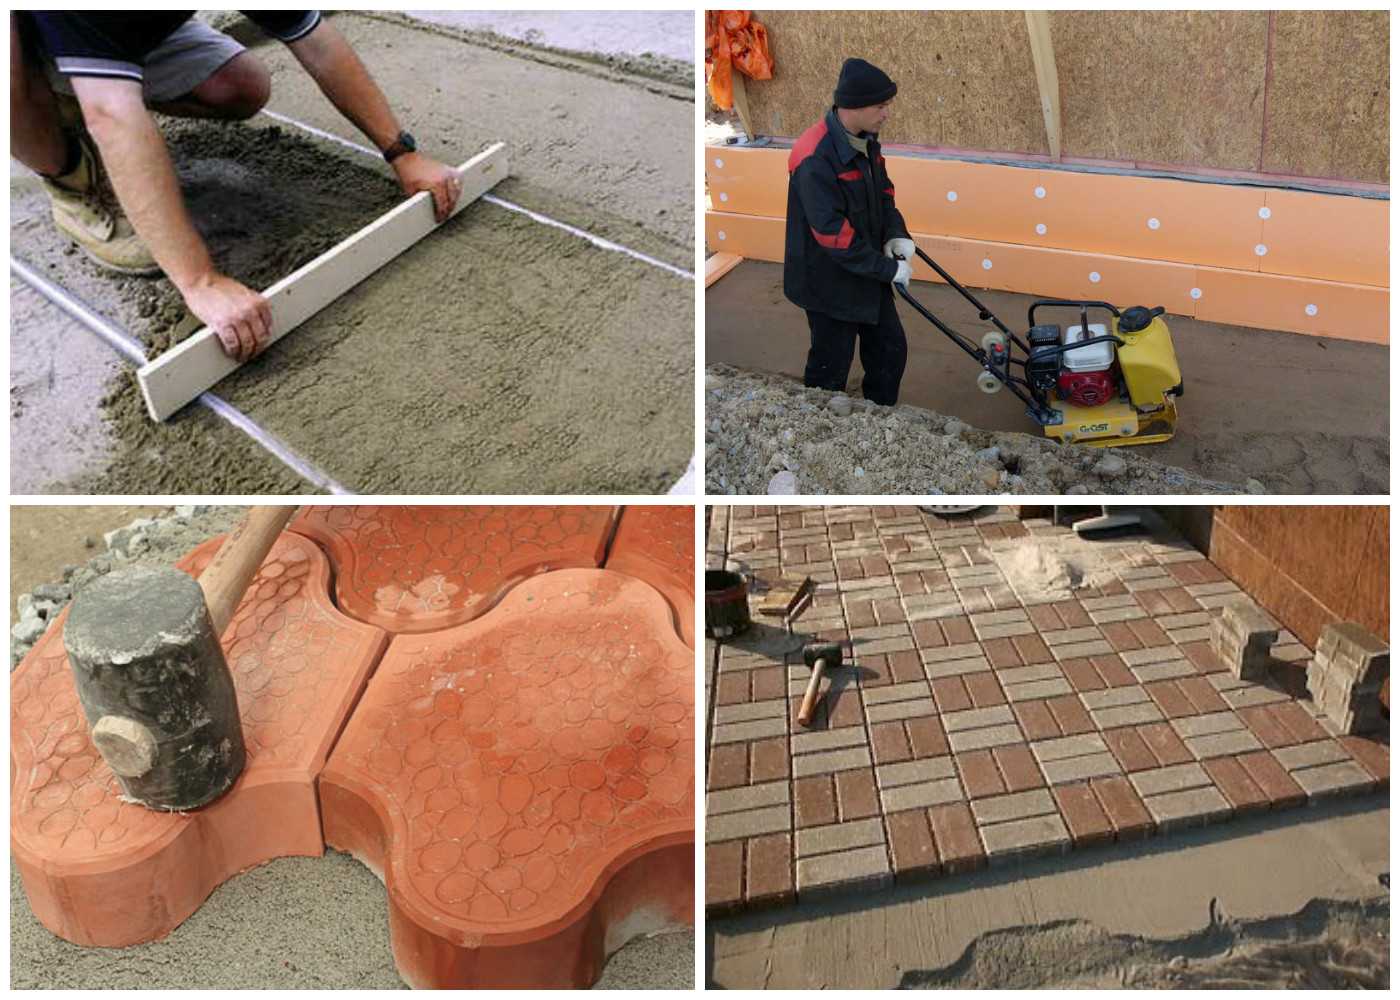 Технология изготовления тротуарной плитки в домашних условиях Как приготовить раствор и сделать формы для производства своими руками Пошаговая инструкция для